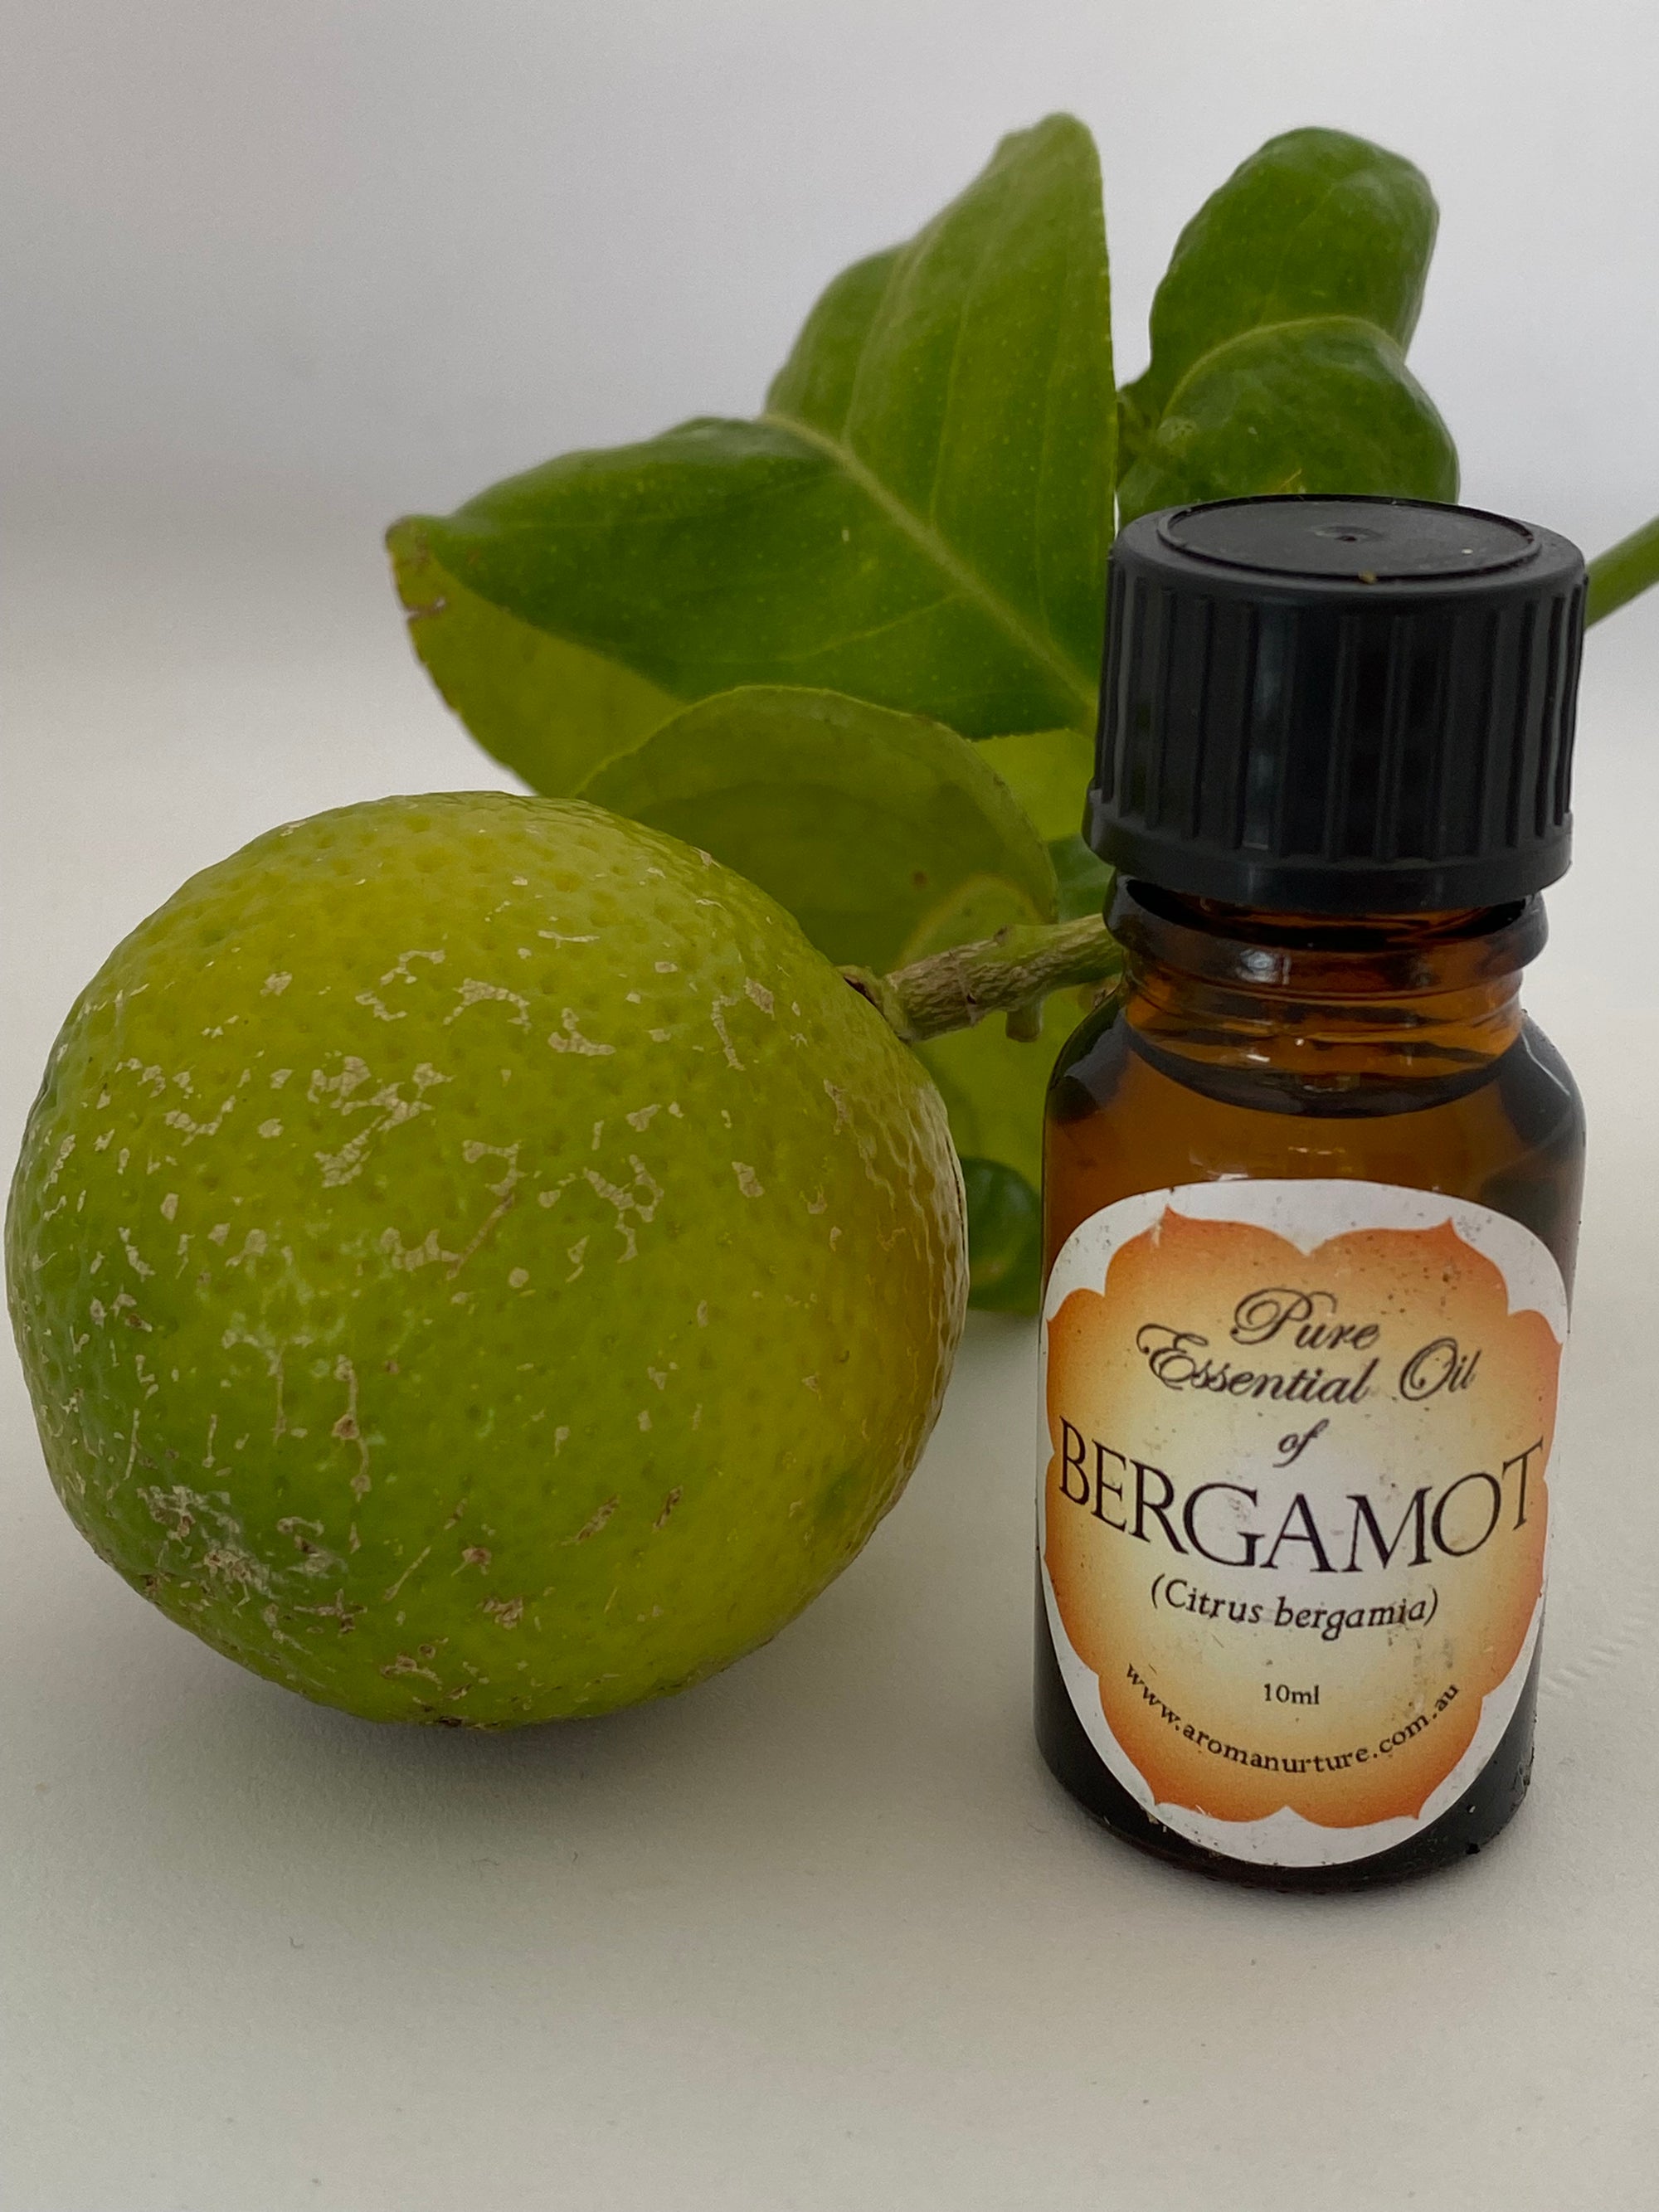 Pure essential oil of Bergamot 10mls (Citrus bergamia)